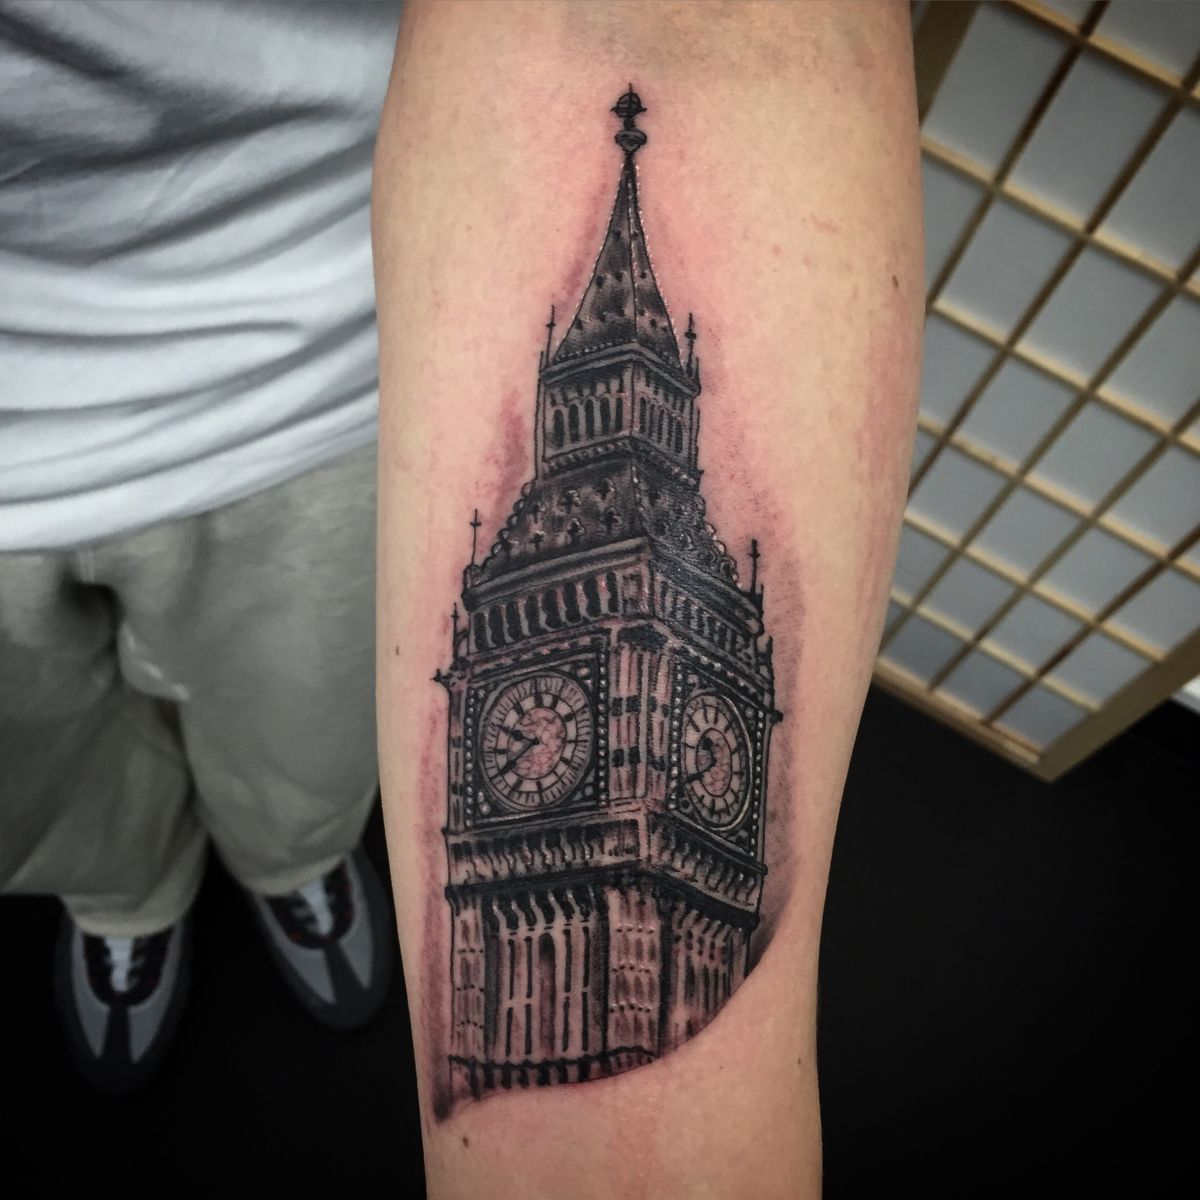 Big Ben tattoo